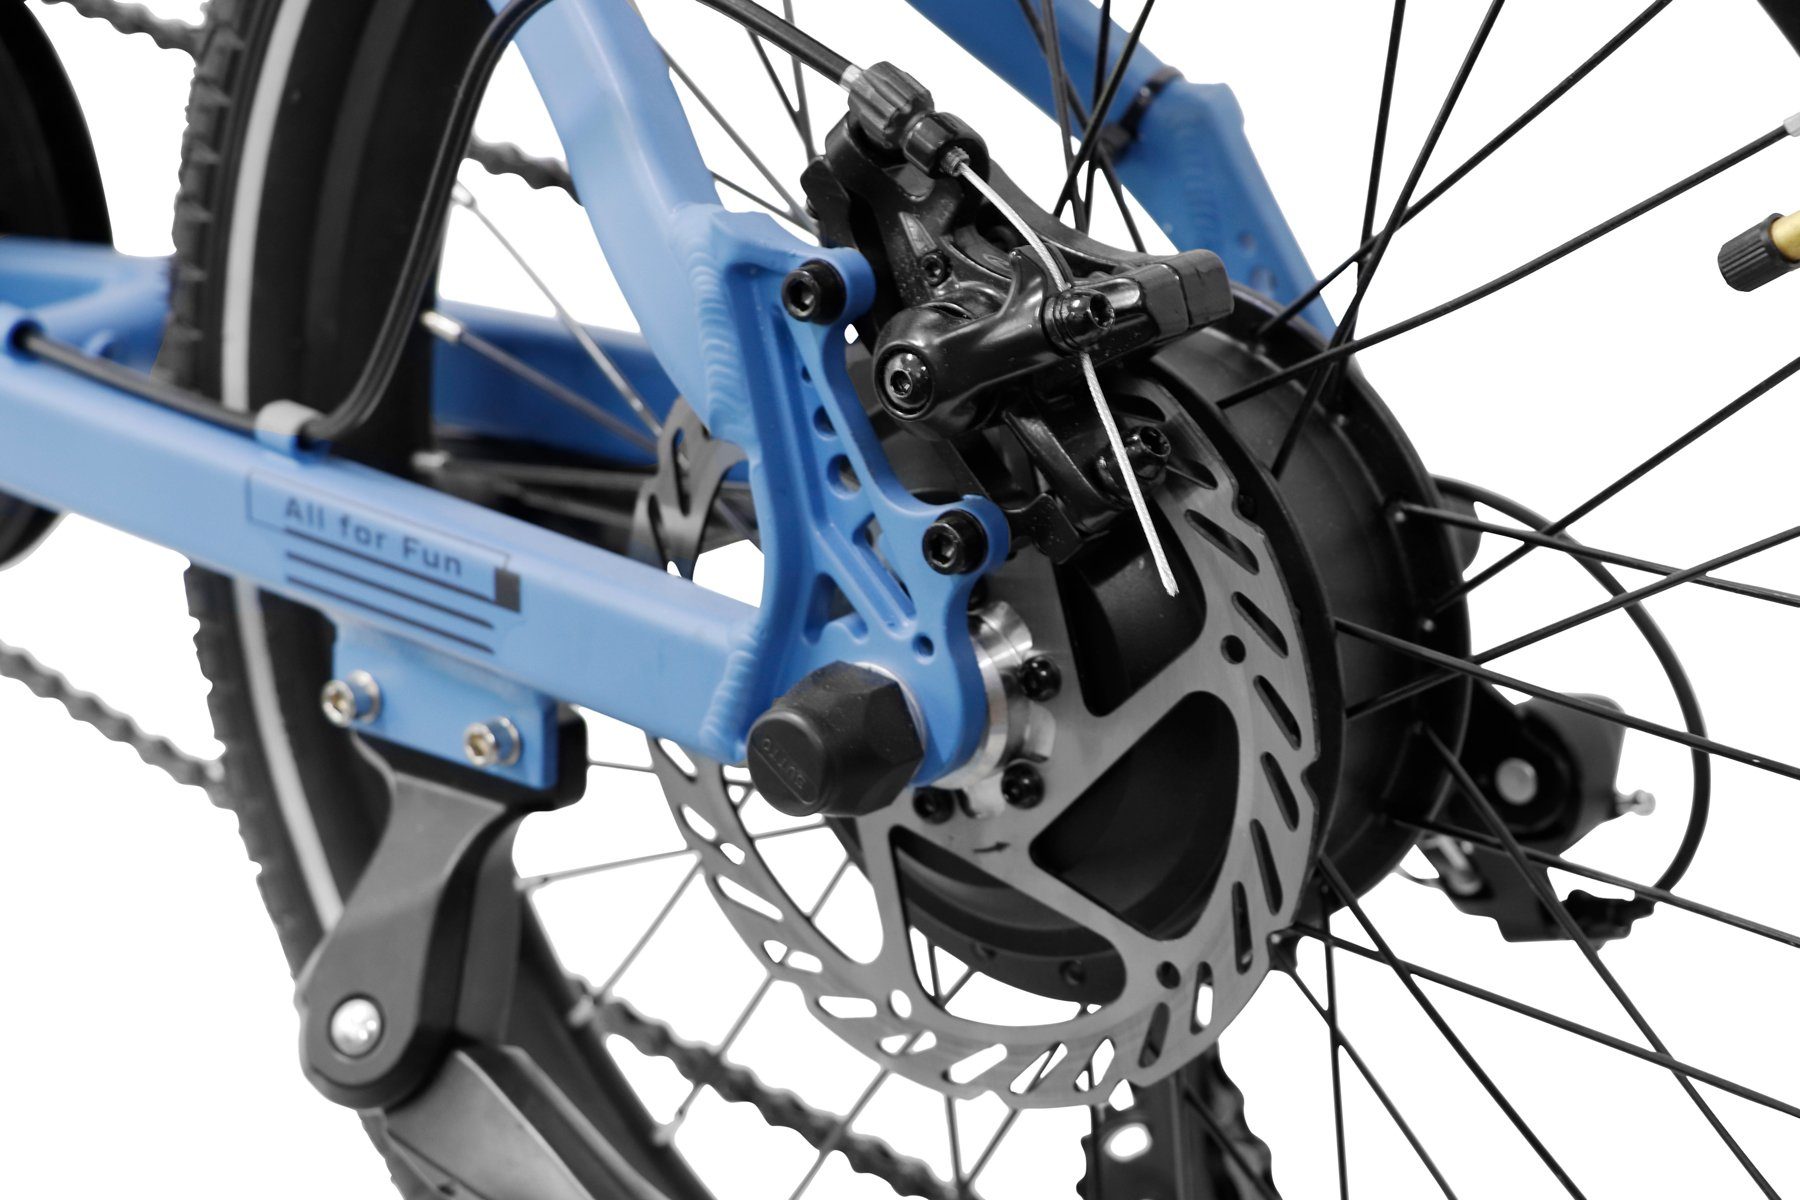 E-Bike Heckmotor, III Ah, Akku 374,40 Gang, Wh LLobe 20" 7 10,4 blau City Falt-E-Bike